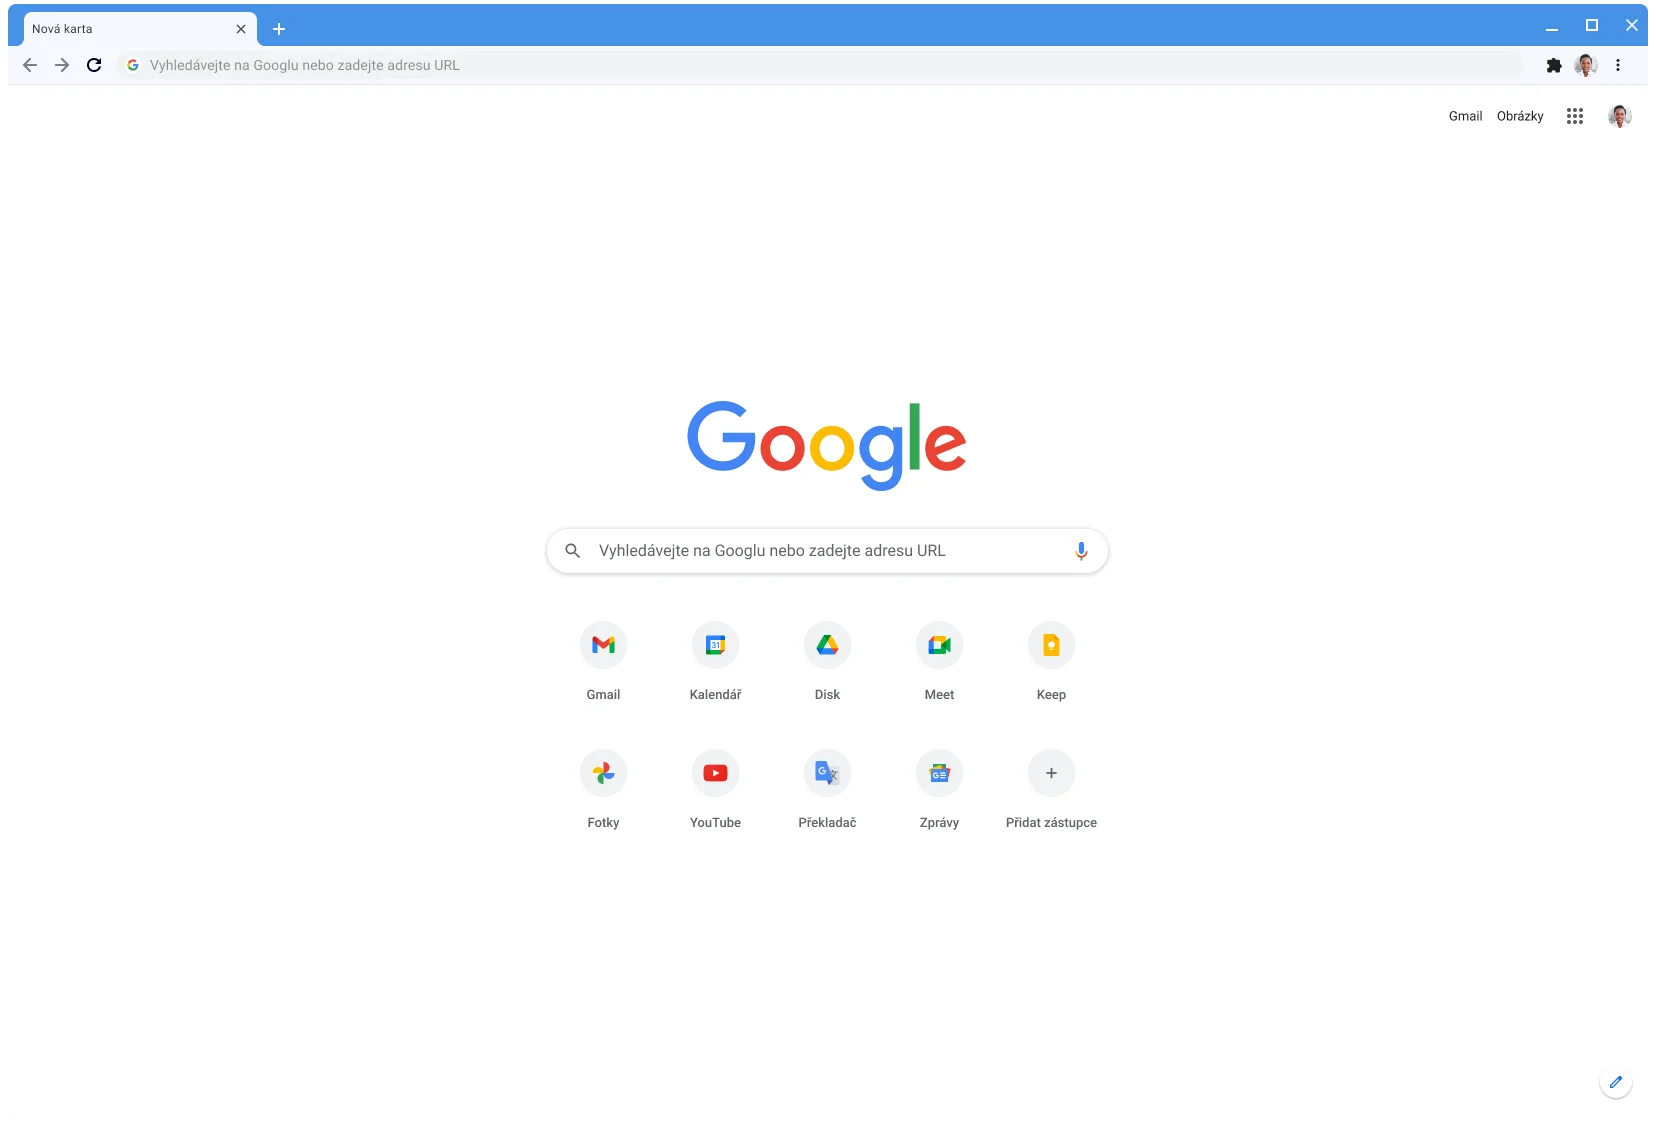 Okno prohlížeče Chrome s webem Google.com v klasickém motivu.